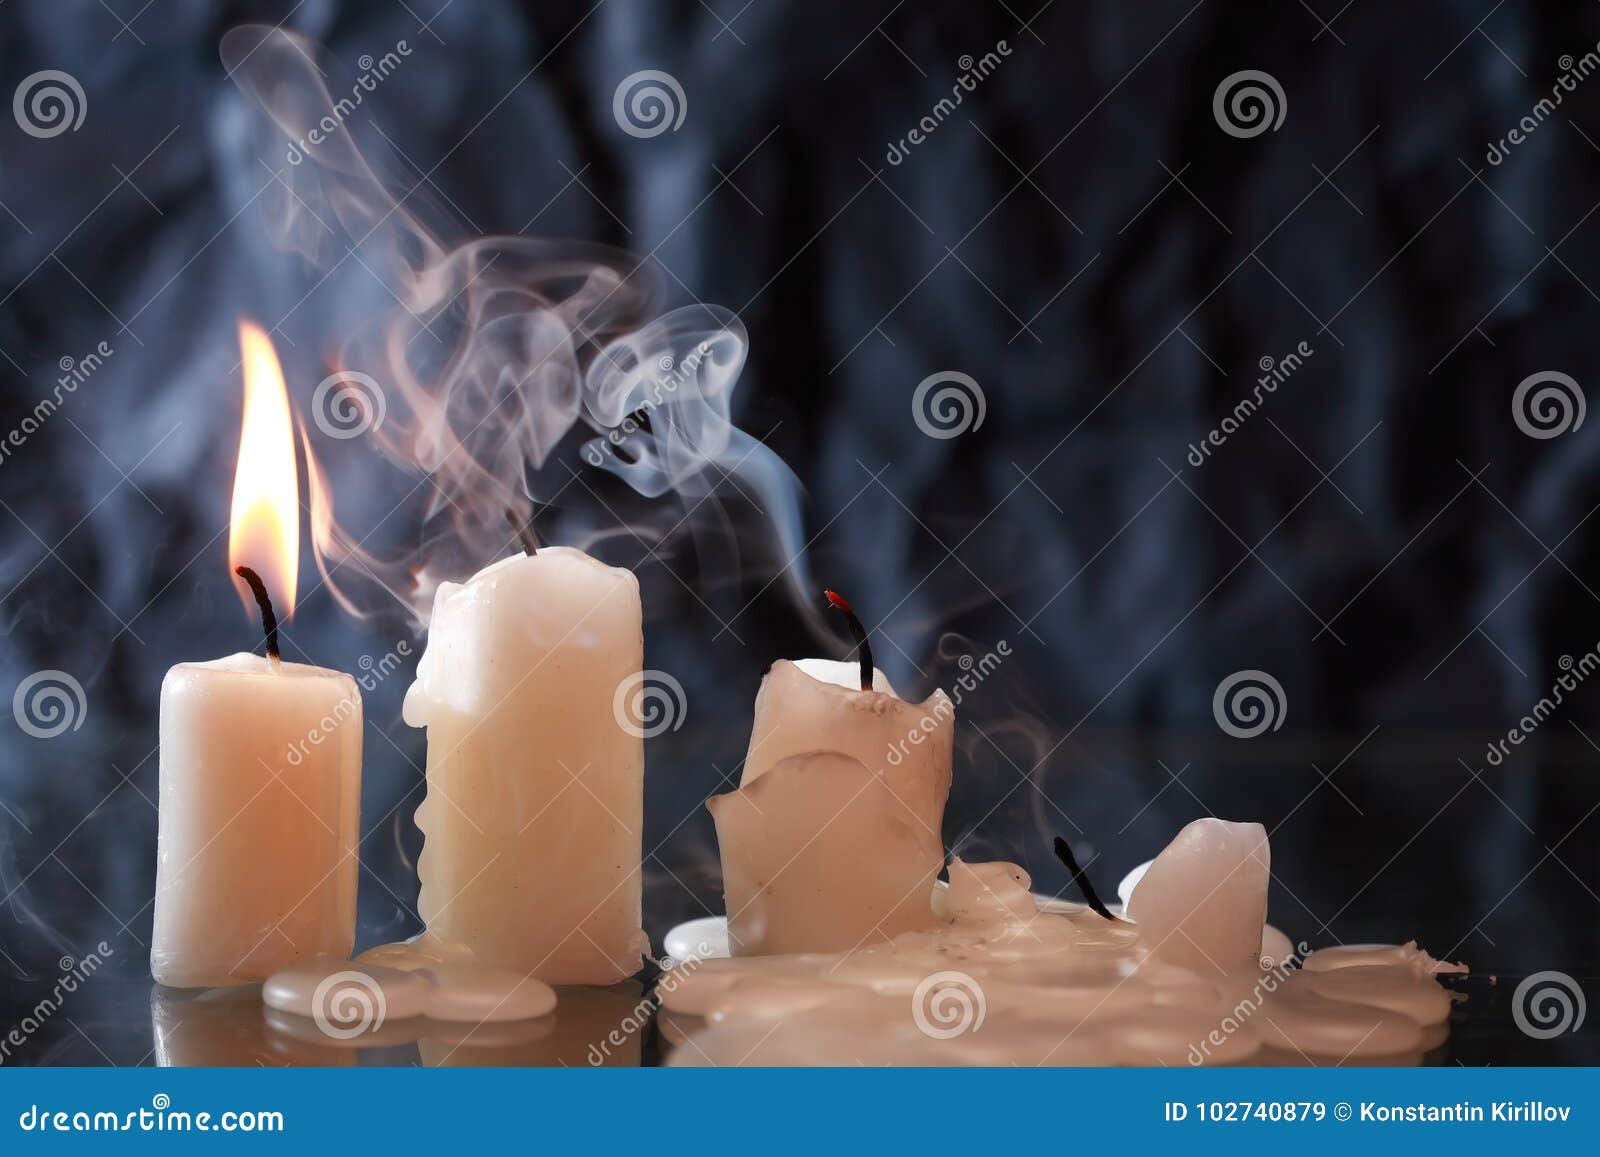 Горящая свеча гаснет в закрытой пробкой. Огарок свечи. Свеча потухла. Оплывшая свеча. Плавление воска для свечей.